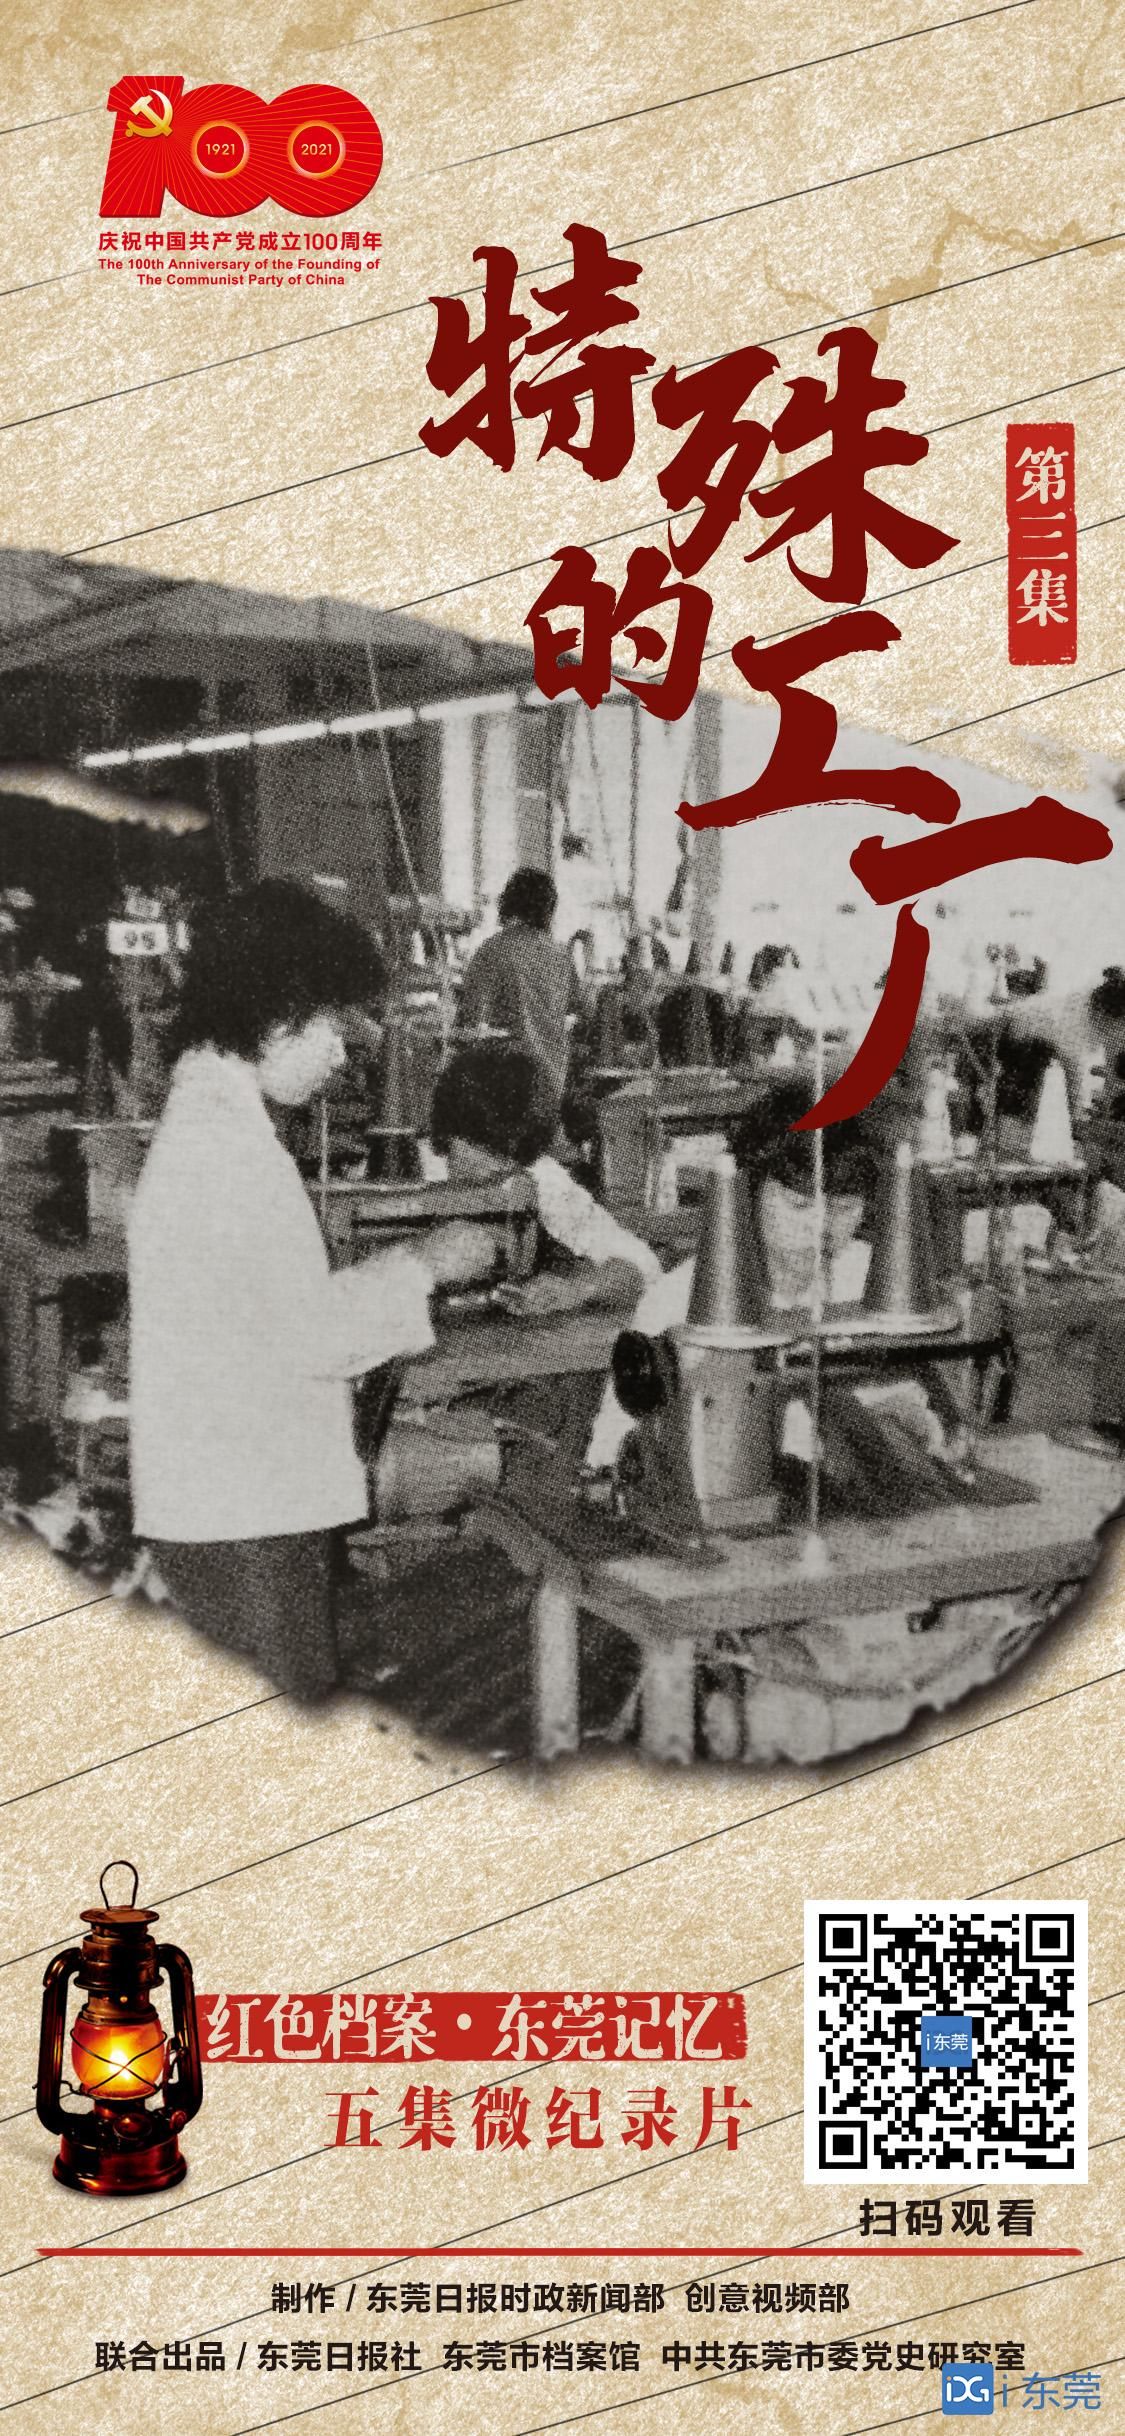 BOB体育网站《赤色档案·东莞回顾》（三）特别的工场1978年承平手袋厂成为华夏(图5)